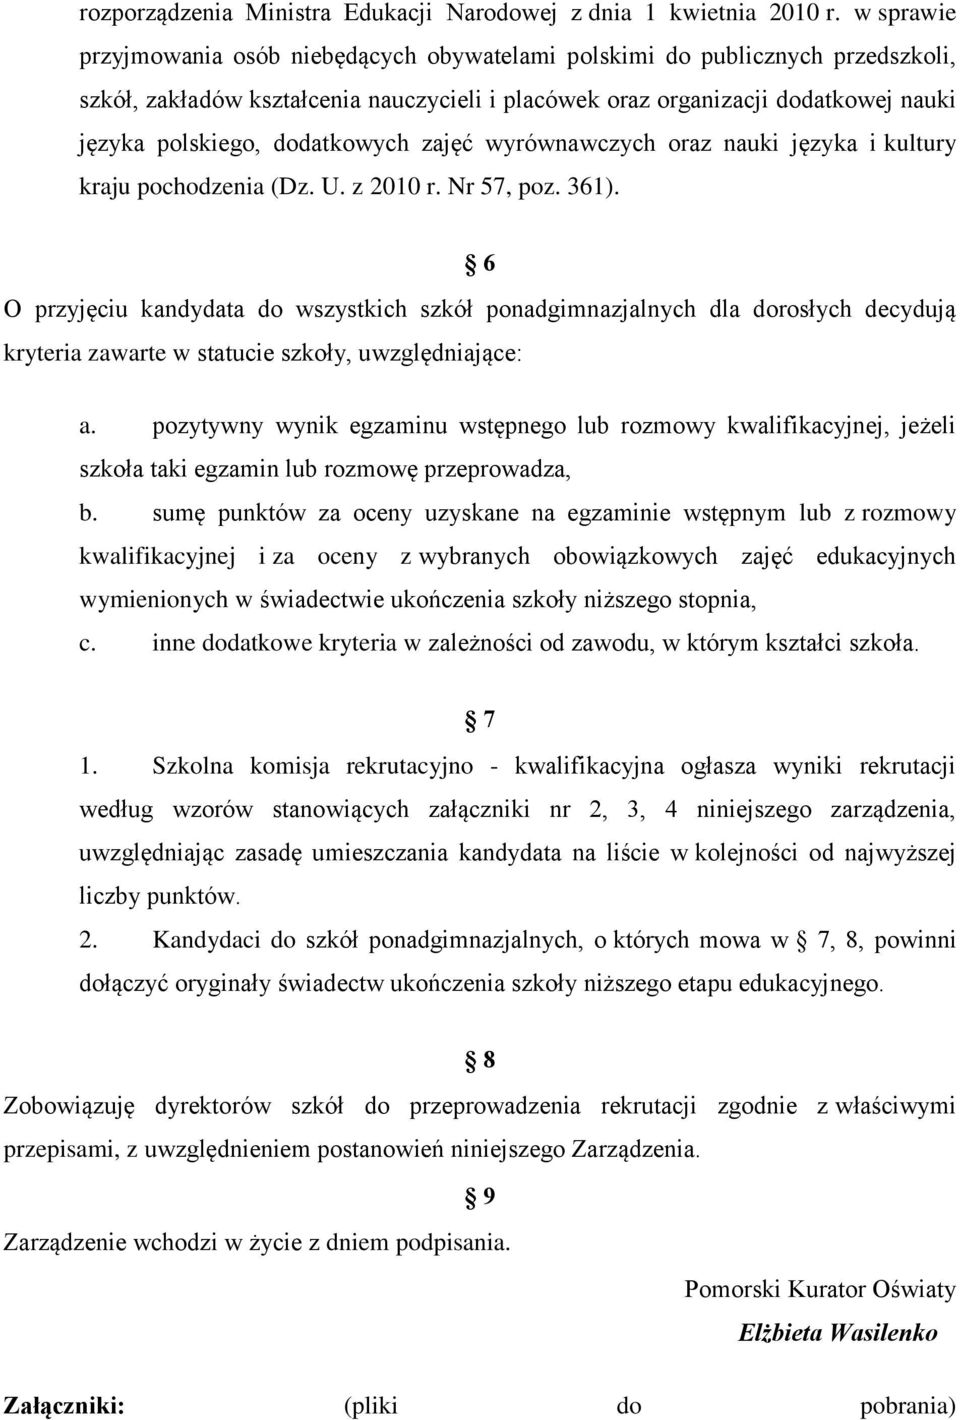 dodatkowych zajęć wyrównawczych oraz nauki języka i kultury kraju pochodzenia (Dz. U. z 2010 r. Nr 57, poz. 361).